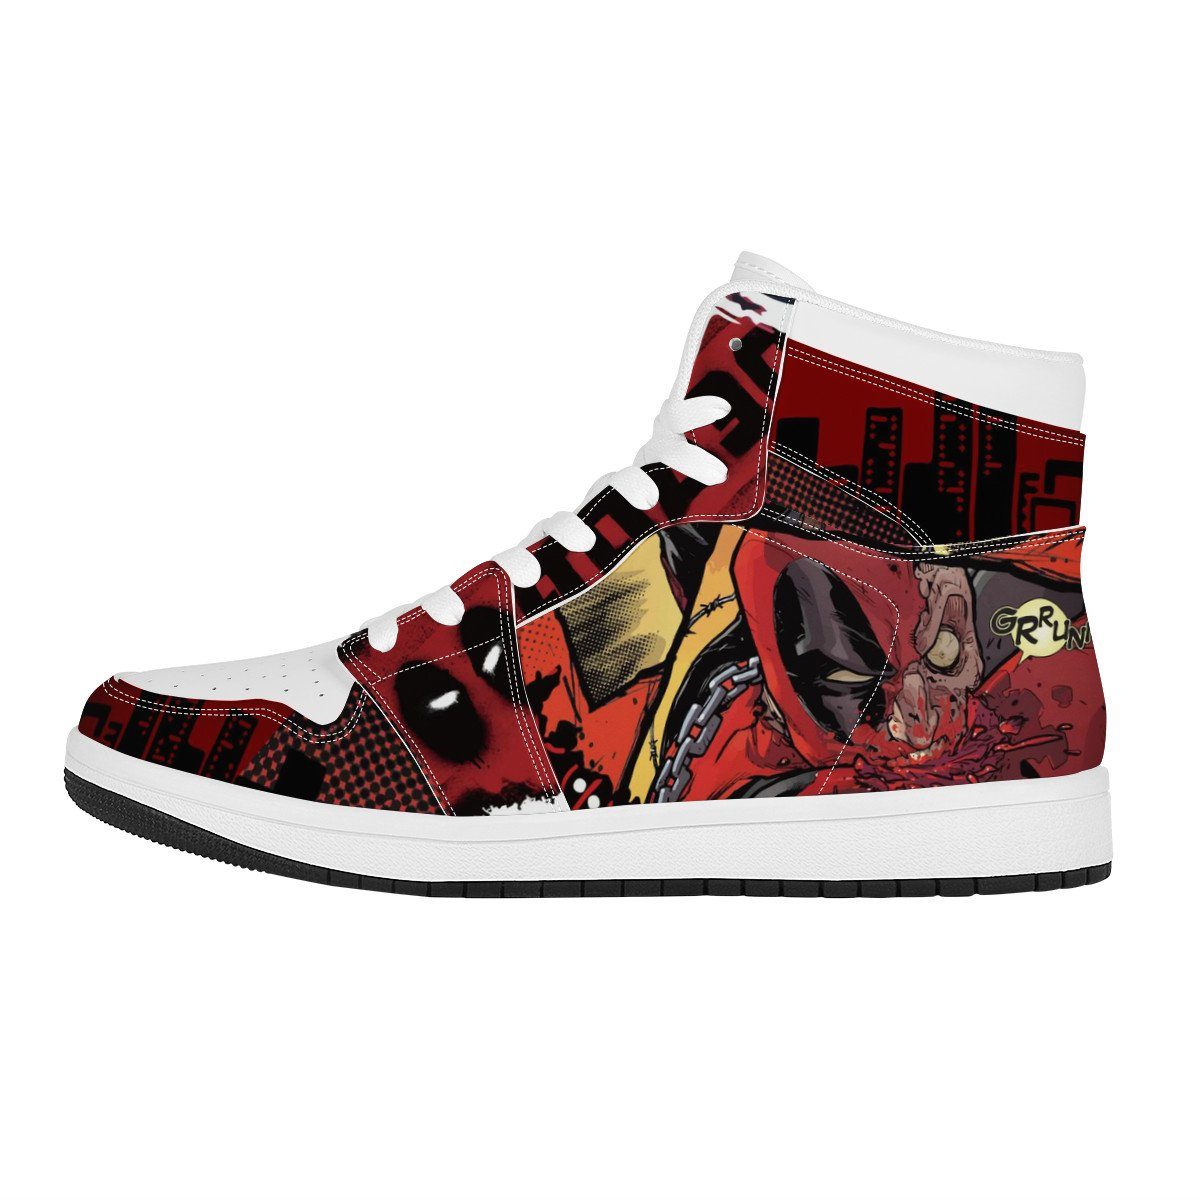 Hero High Top Leather Sneaker Custom Jordan 1, Deadpool noxfan Women US5.5 (EU36) 